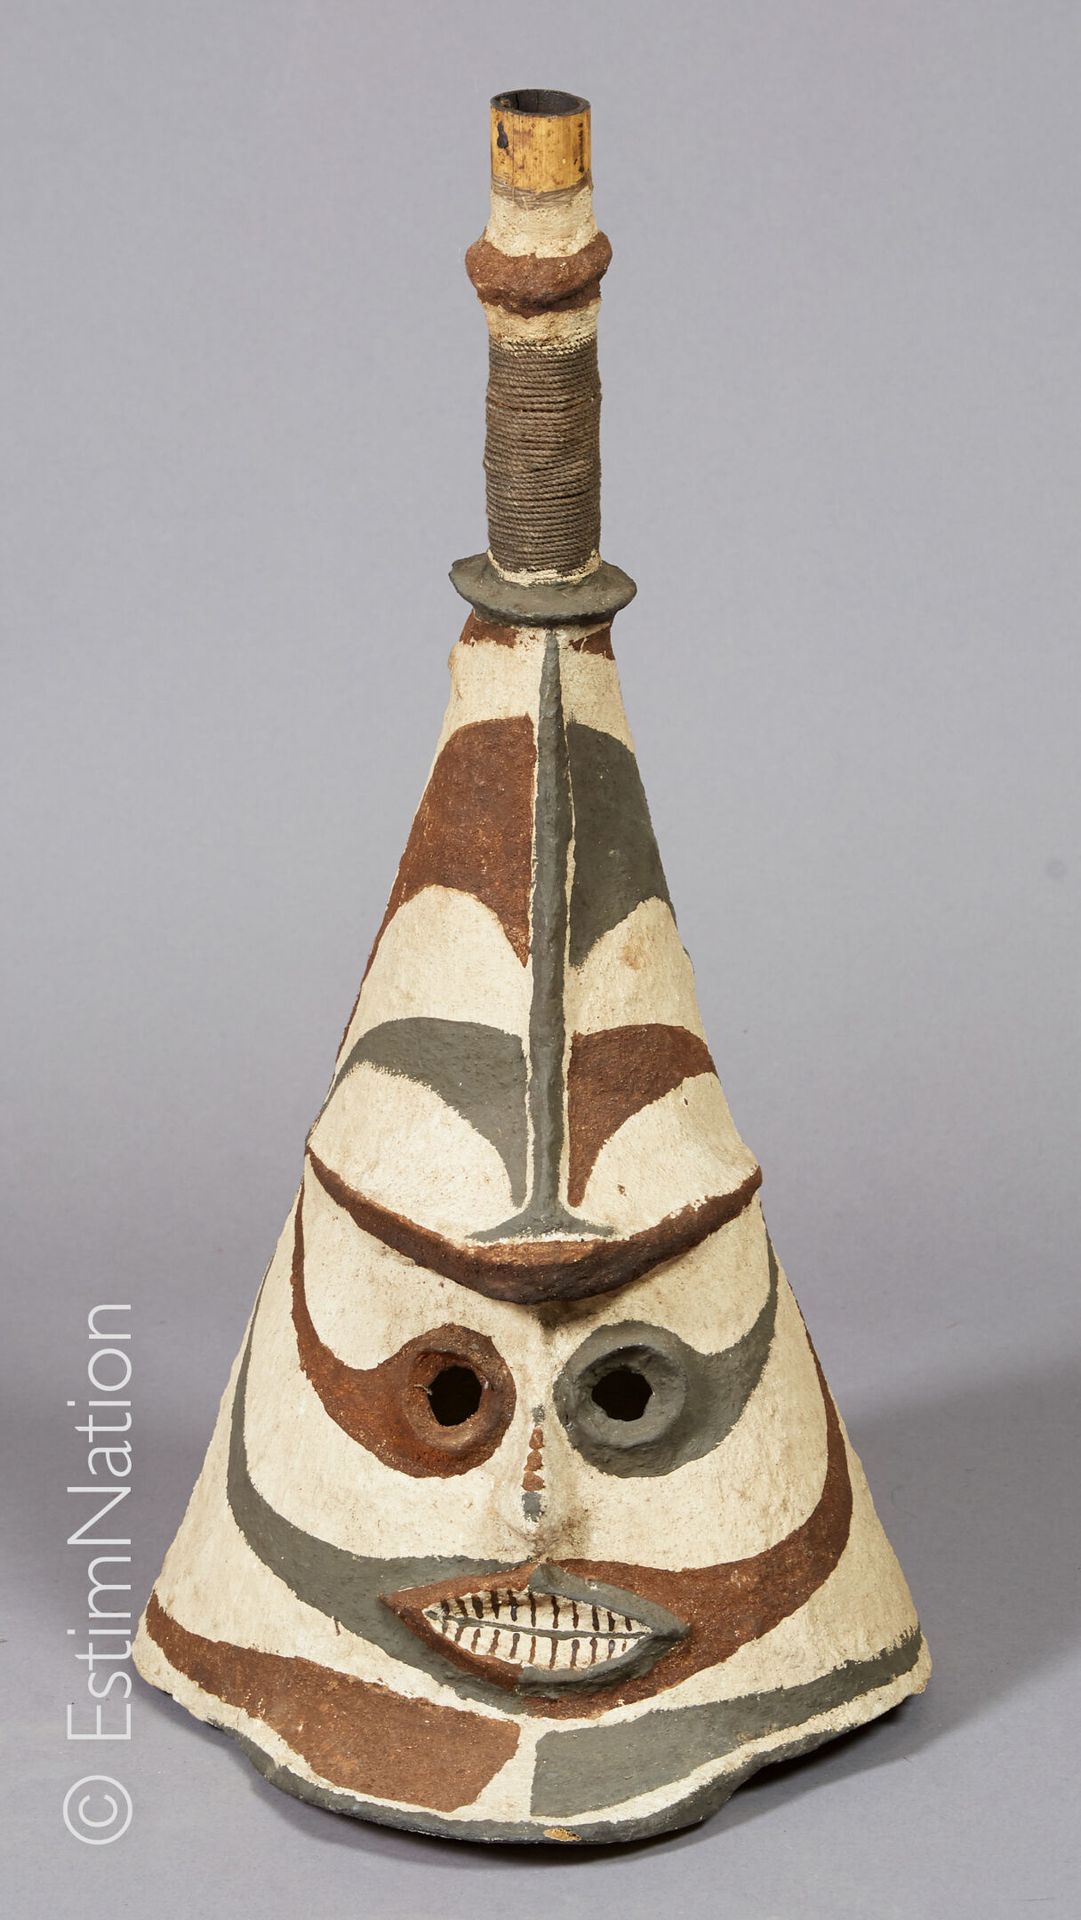 VANUATU 瓦努阿图



由植物纤维、泥土和天然颜料制成的面具，代表一个风格化的祖先。



高度：64厘米 - 宽度：30厘米 - 深度：36厘米

(&hellip;